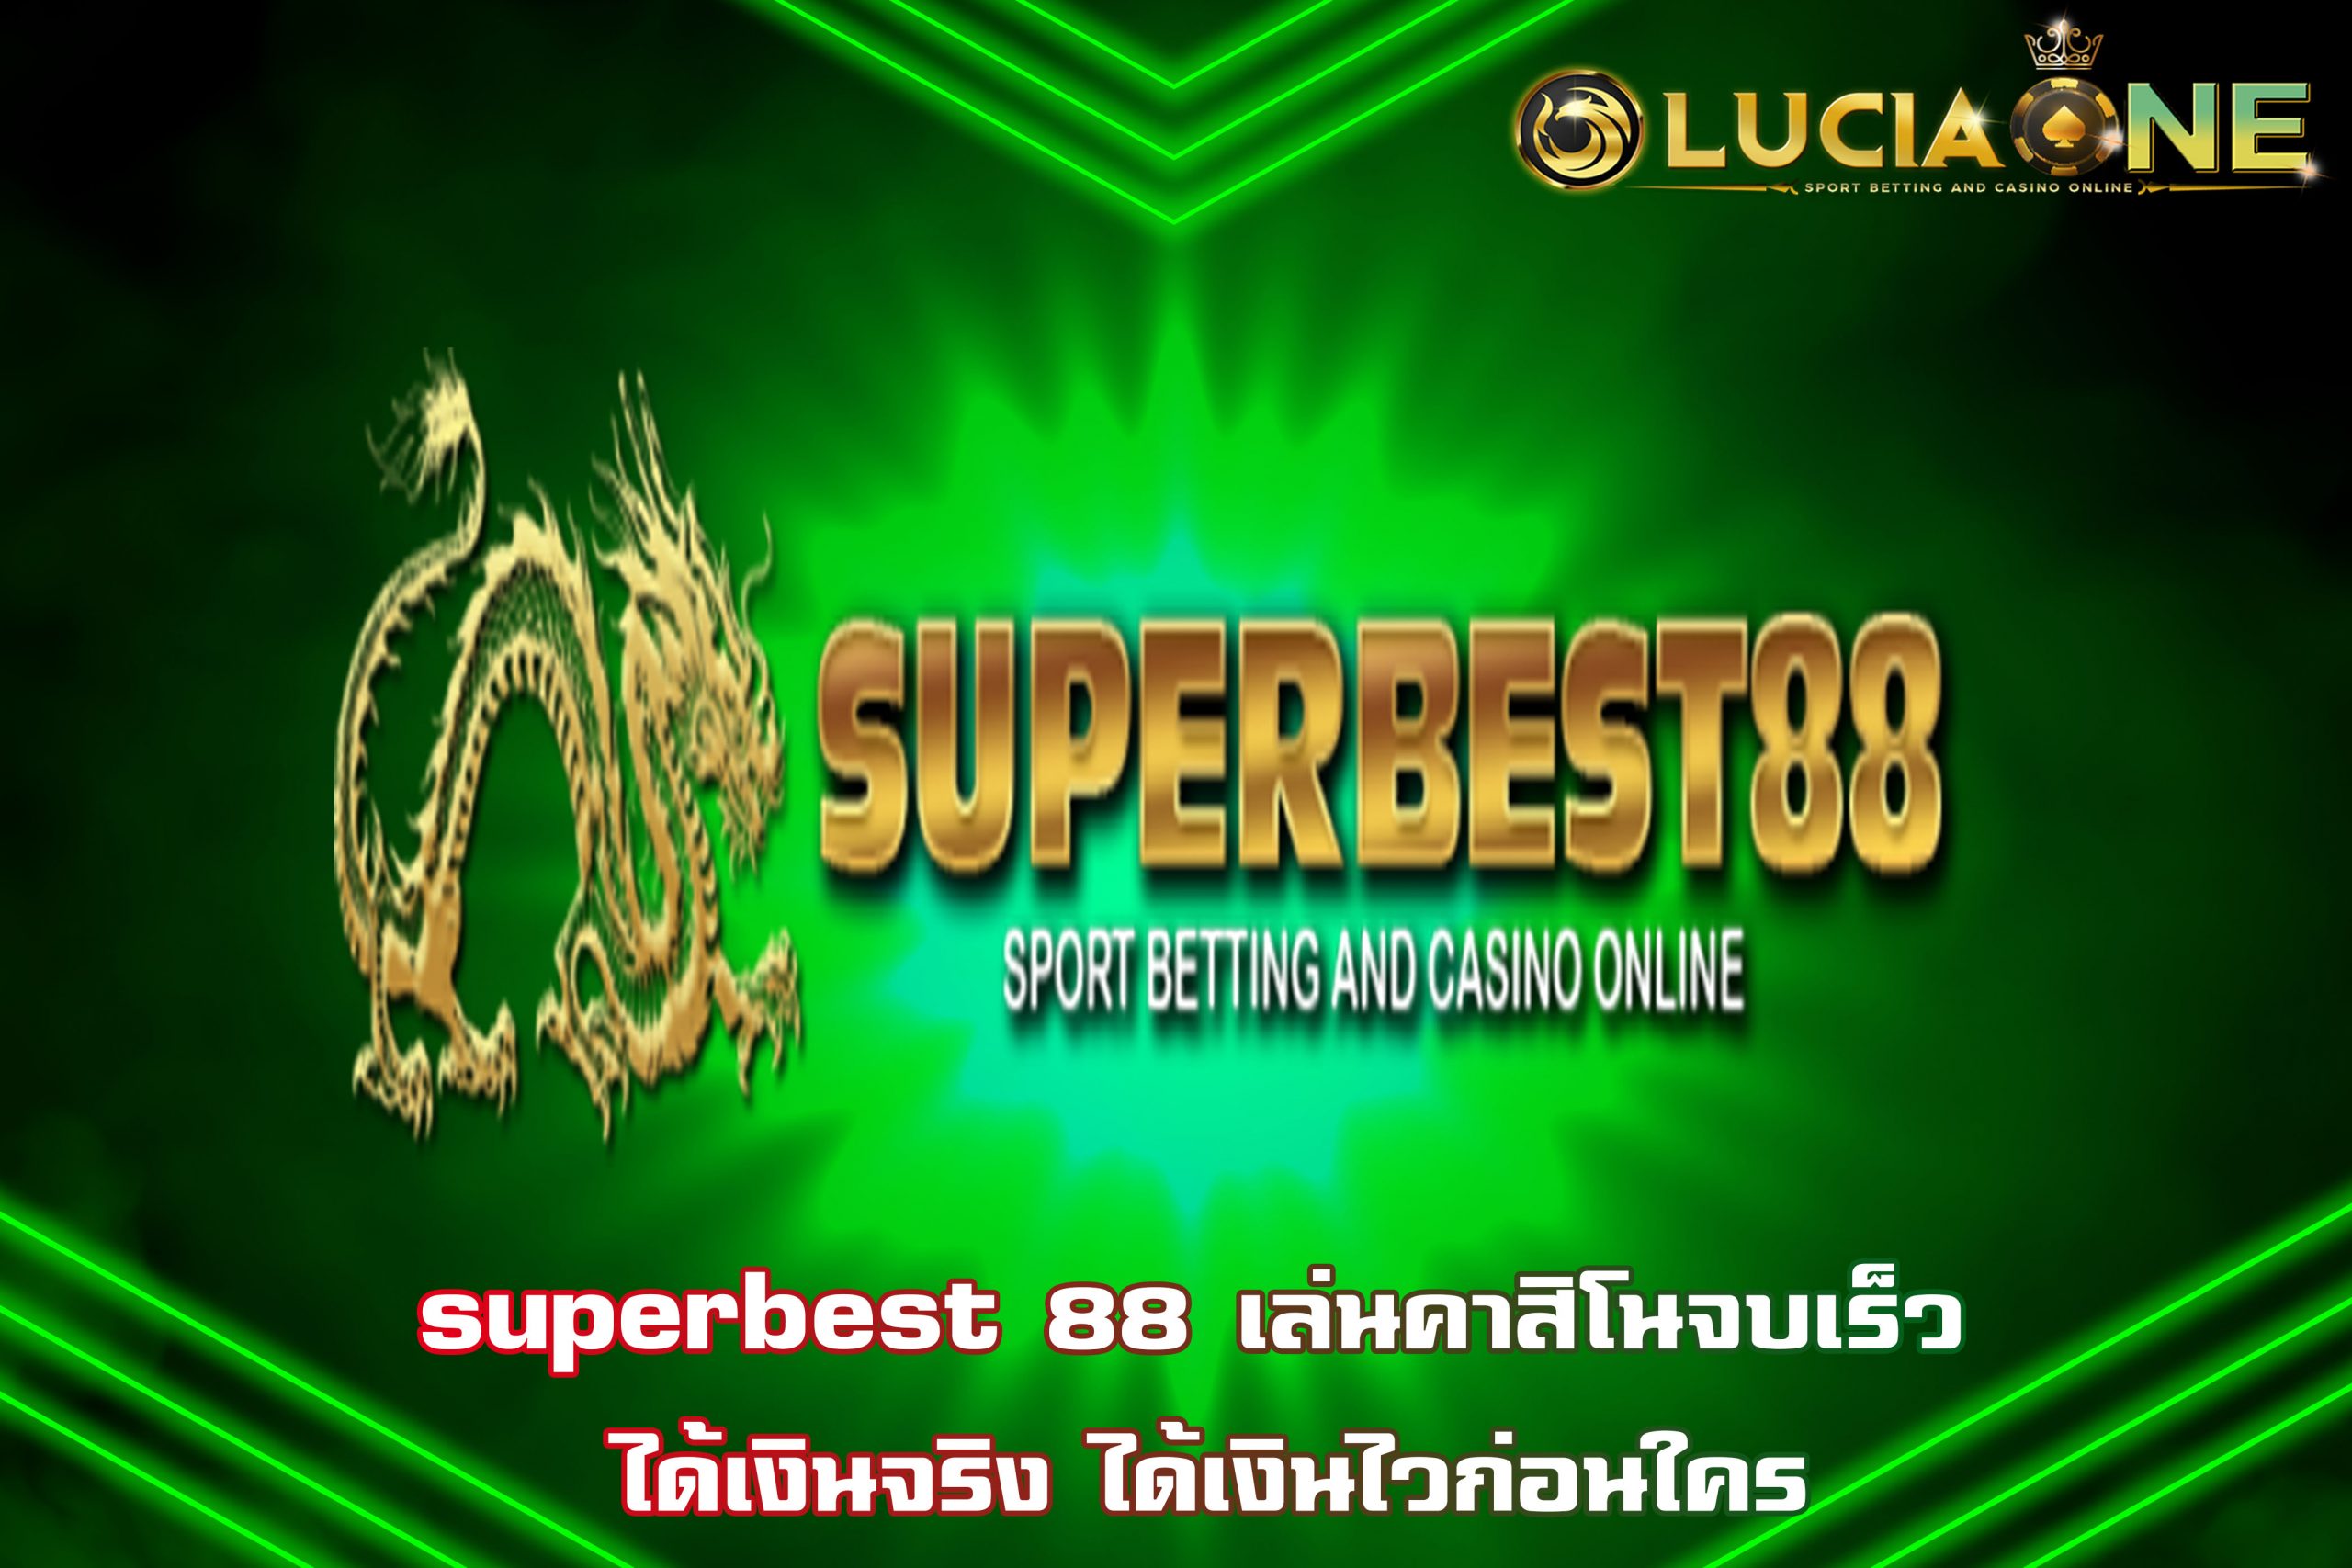 superbest 88